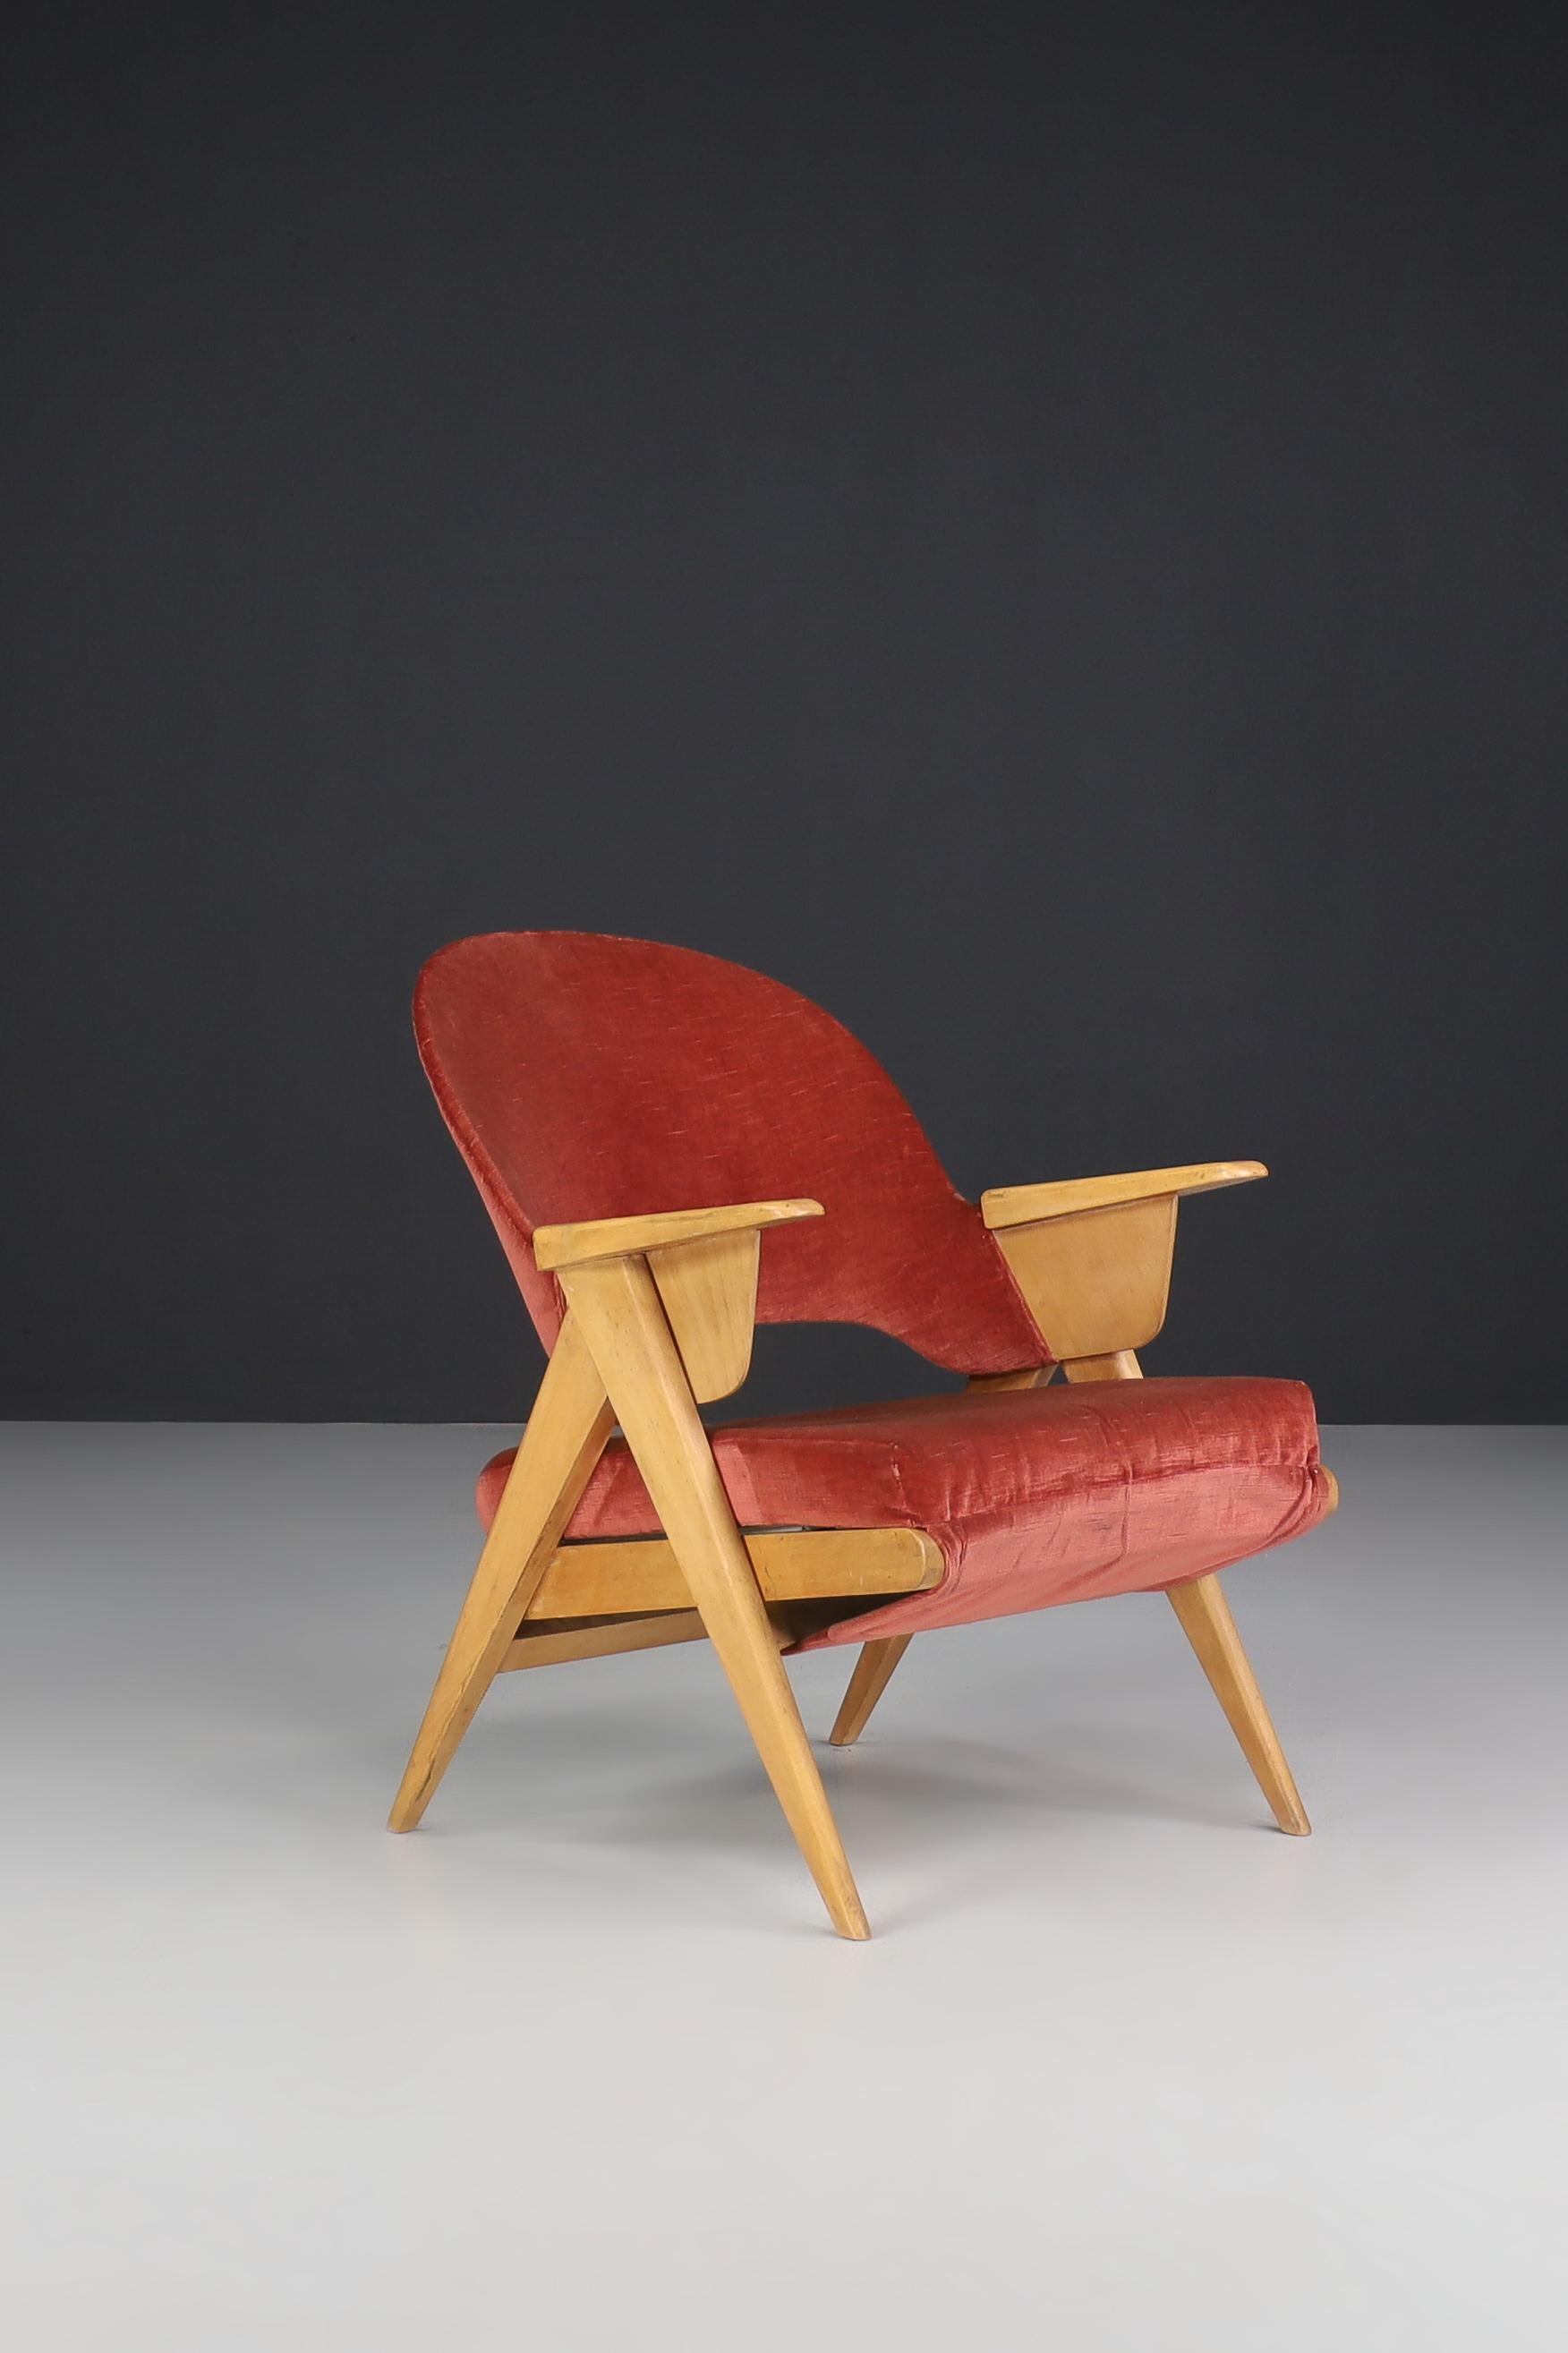 Mid-Century Modern Holz und original Samt Lounge-Sessel in Frankreich 1950er Jahren gemacht.

Mid-Century Modern Holz und original Samt Lounge-Sessel in Frankreich in den 1950er Jahren gemacht. Dieser reizende Sessel ist ein Blickfang in jedem